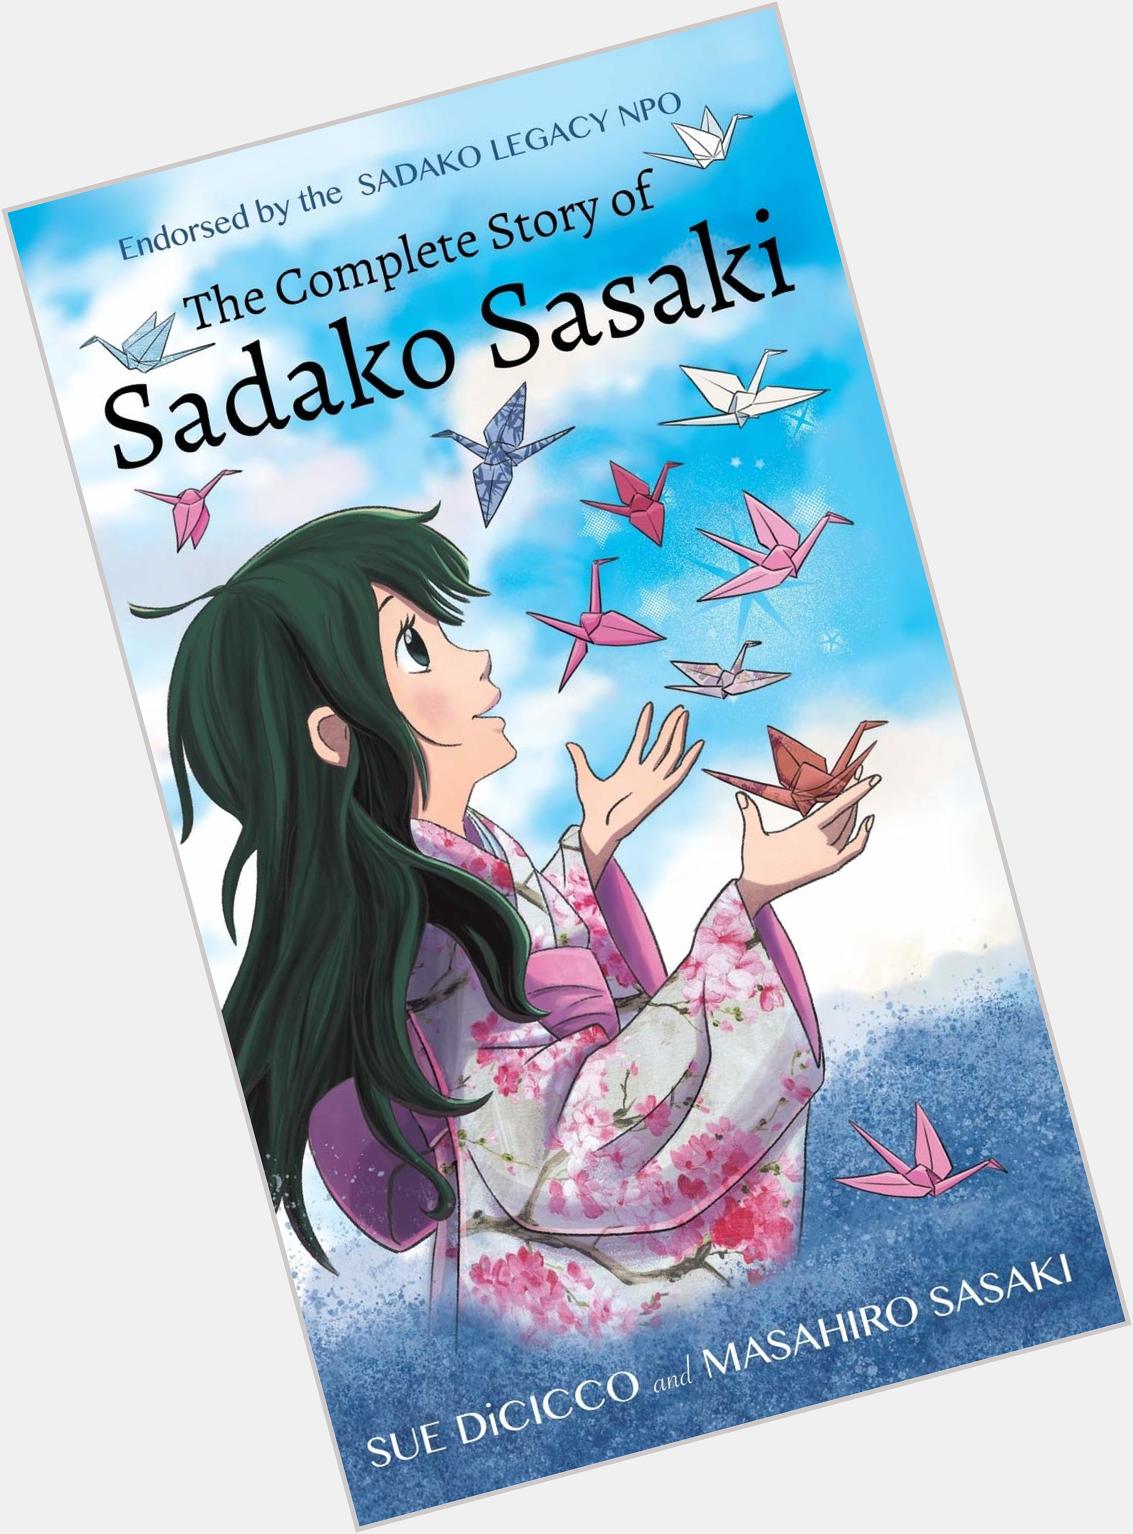 Sadako Sasaki hairstyle 8